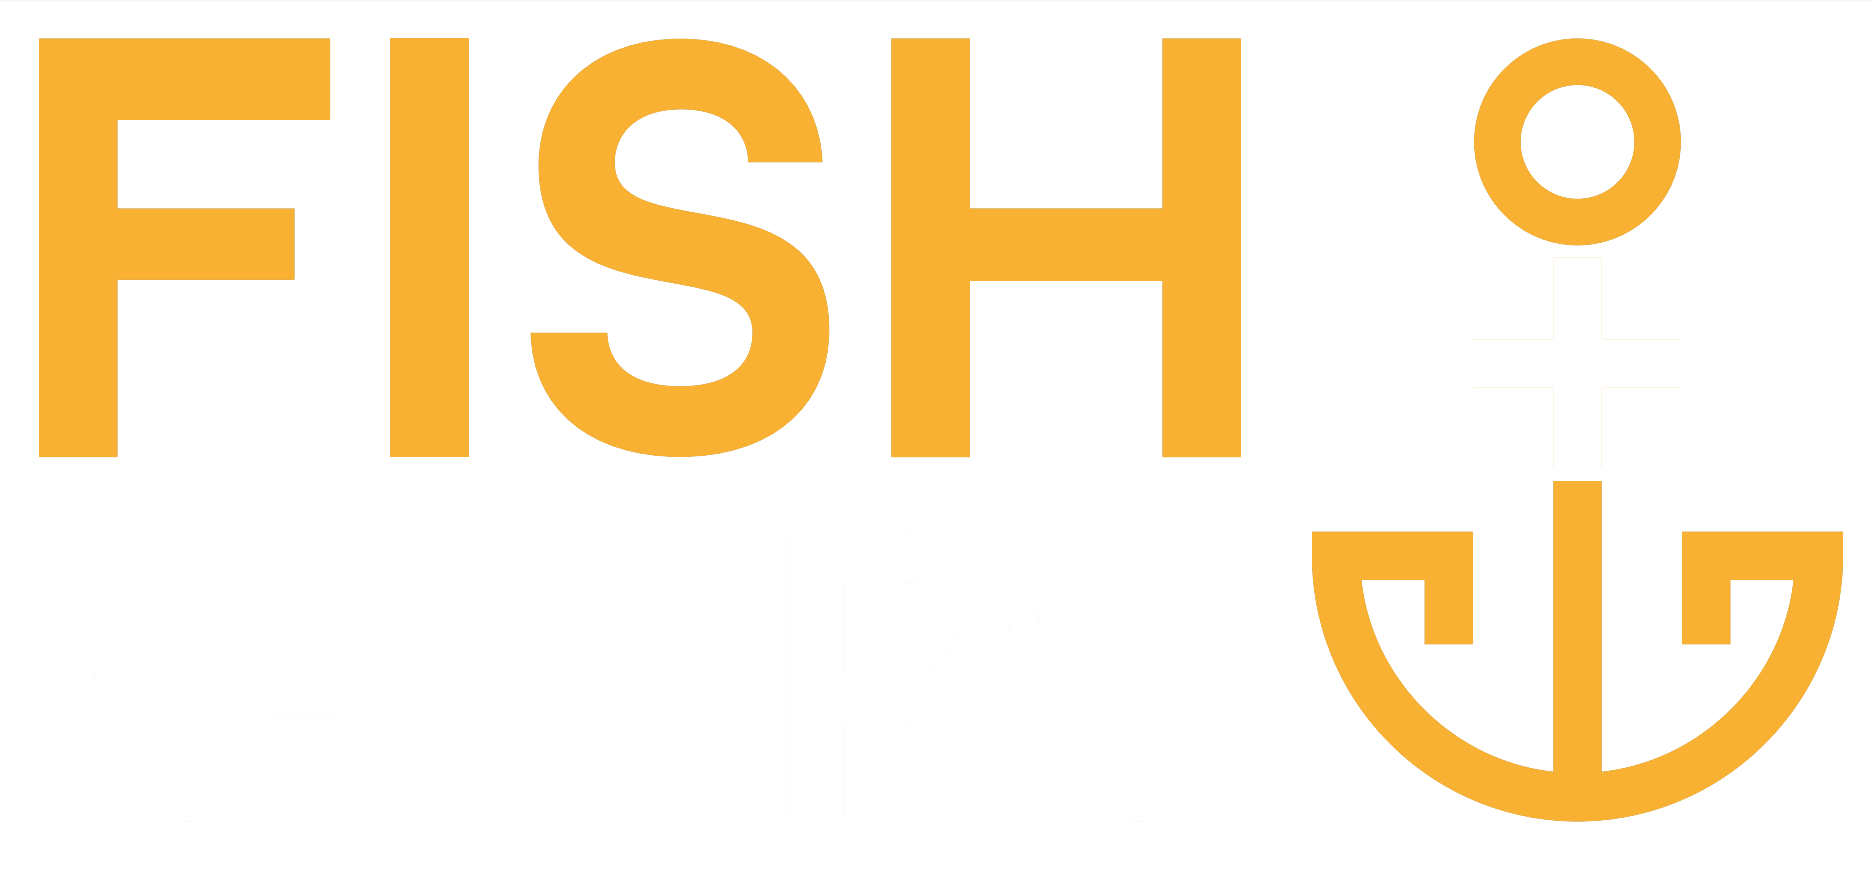 Fish Plus Chips Ayr logo